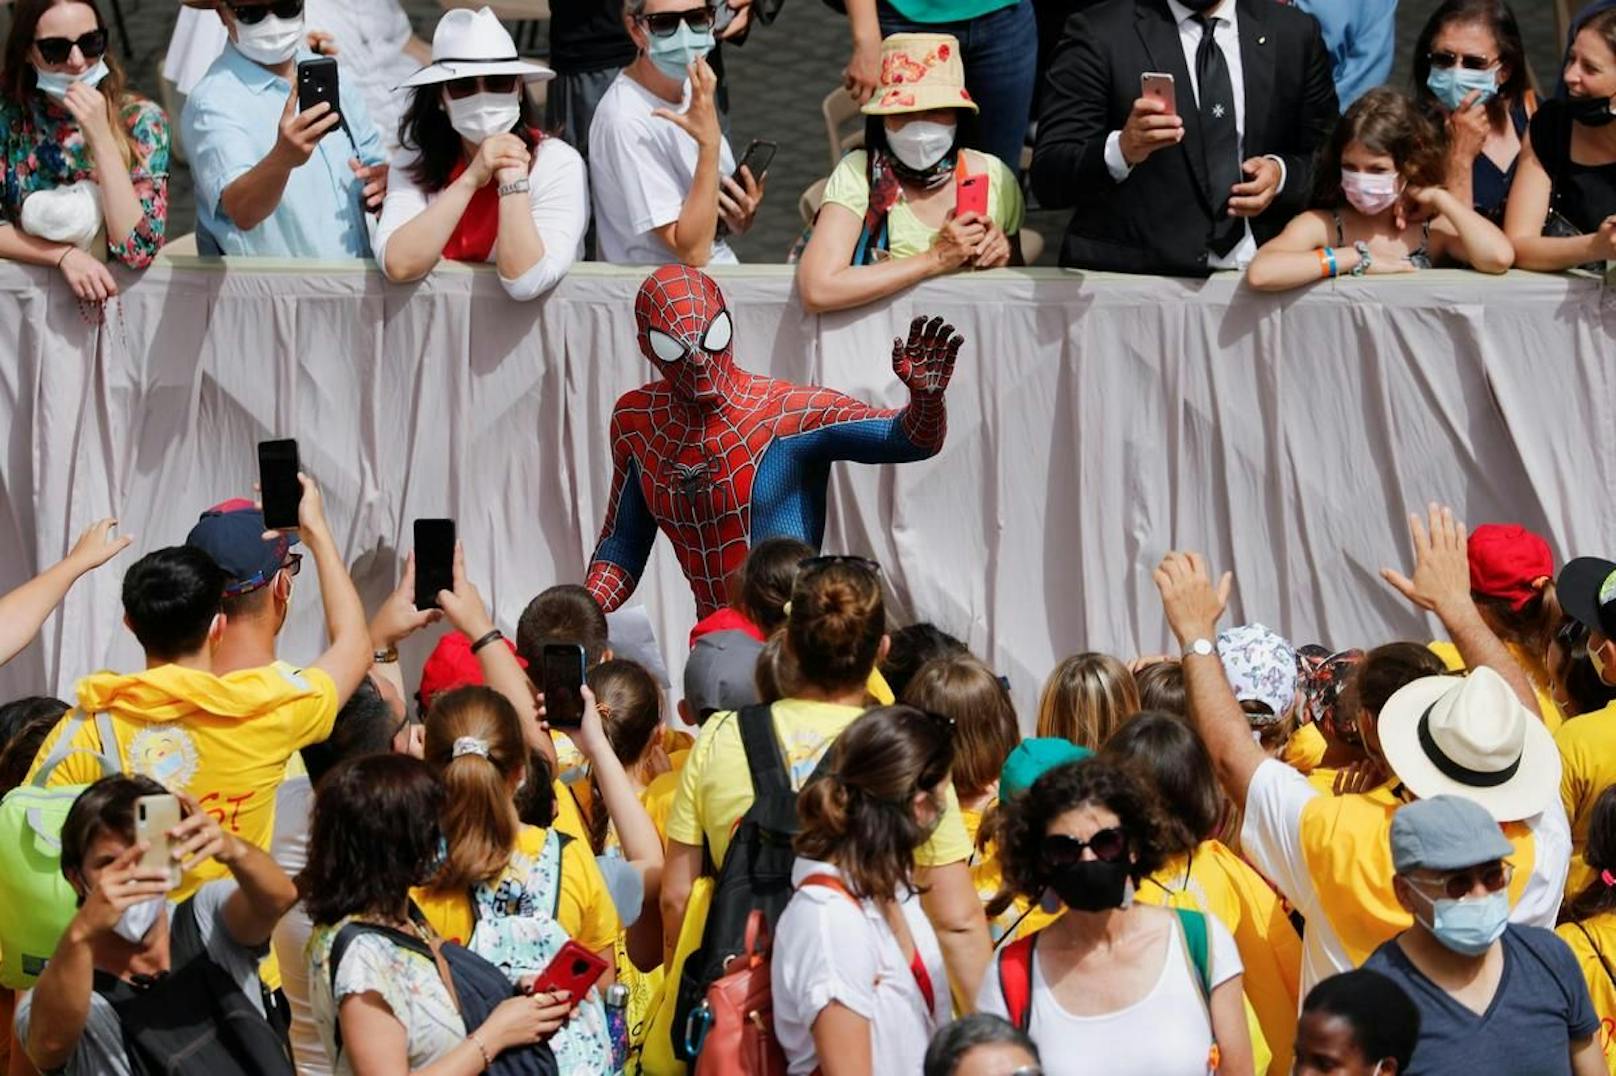 Am Schluss animierte "Spiderman" eine anwesende Schüler-Gruppe zum Jubeln.